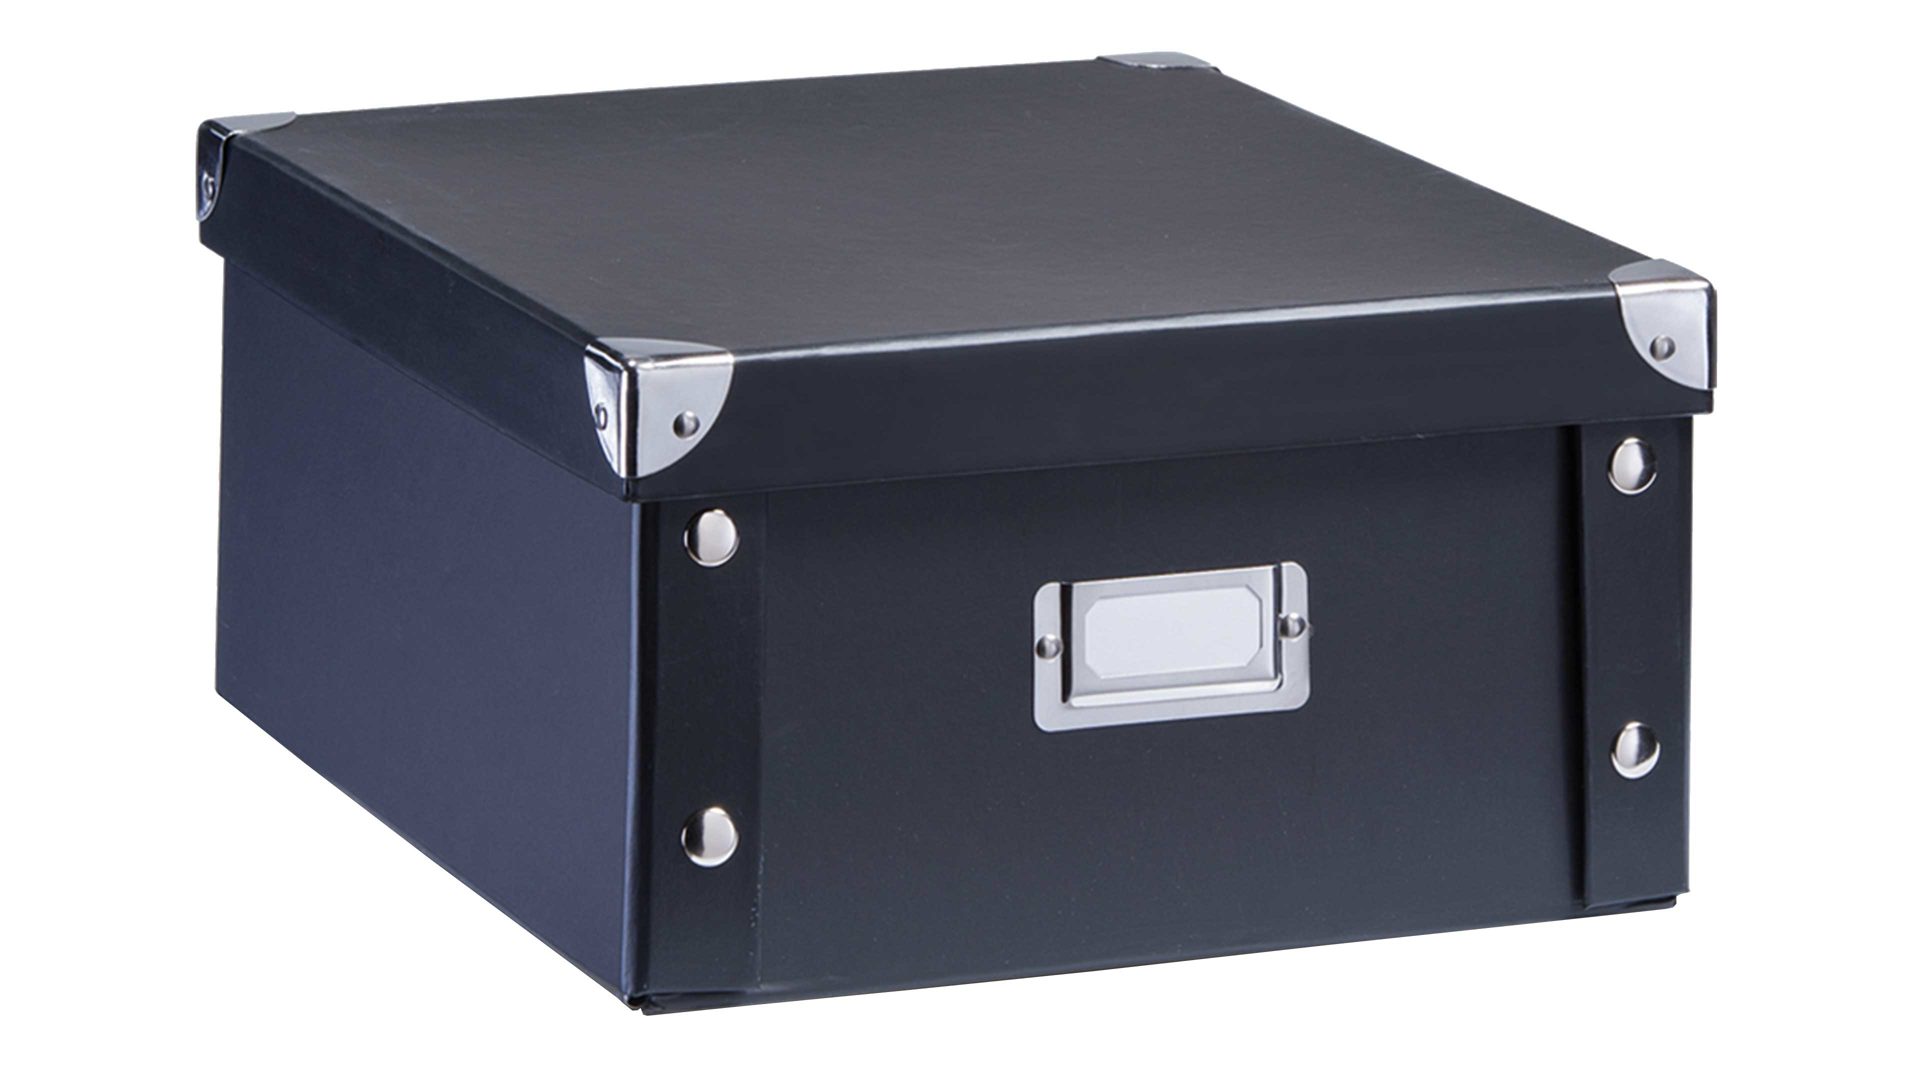 Aufbewahrungsbox Zeller present aus Karton / Papier / Pappe in Schwarz zeller Aufbewahrungsbox schwarze Pappe - ca. 26 x 31 cm